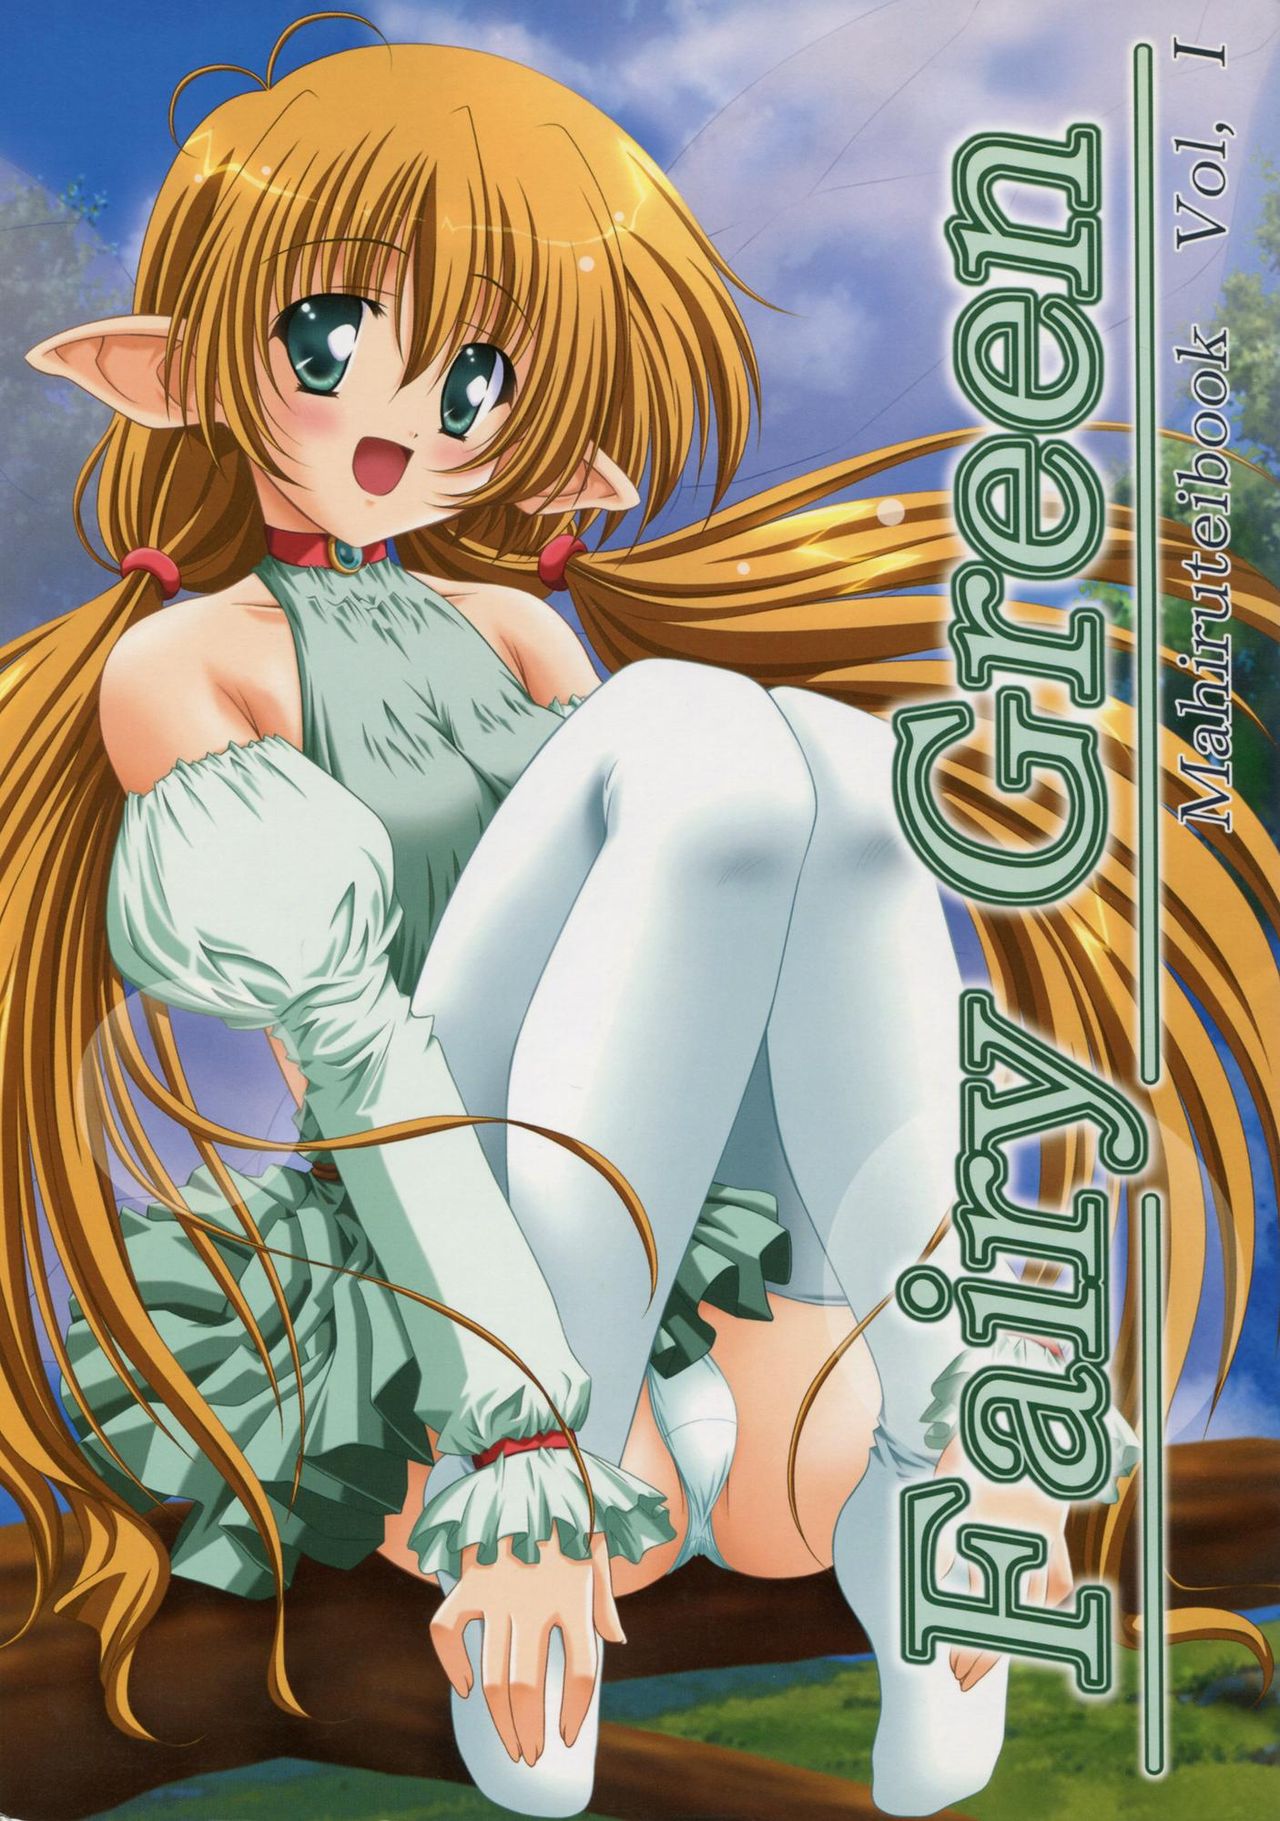 (C59) [Mahirutei (Izumi Mahiru)] Fairy Green (C59) [まひる亭 (泉まひる)] Fairy Green